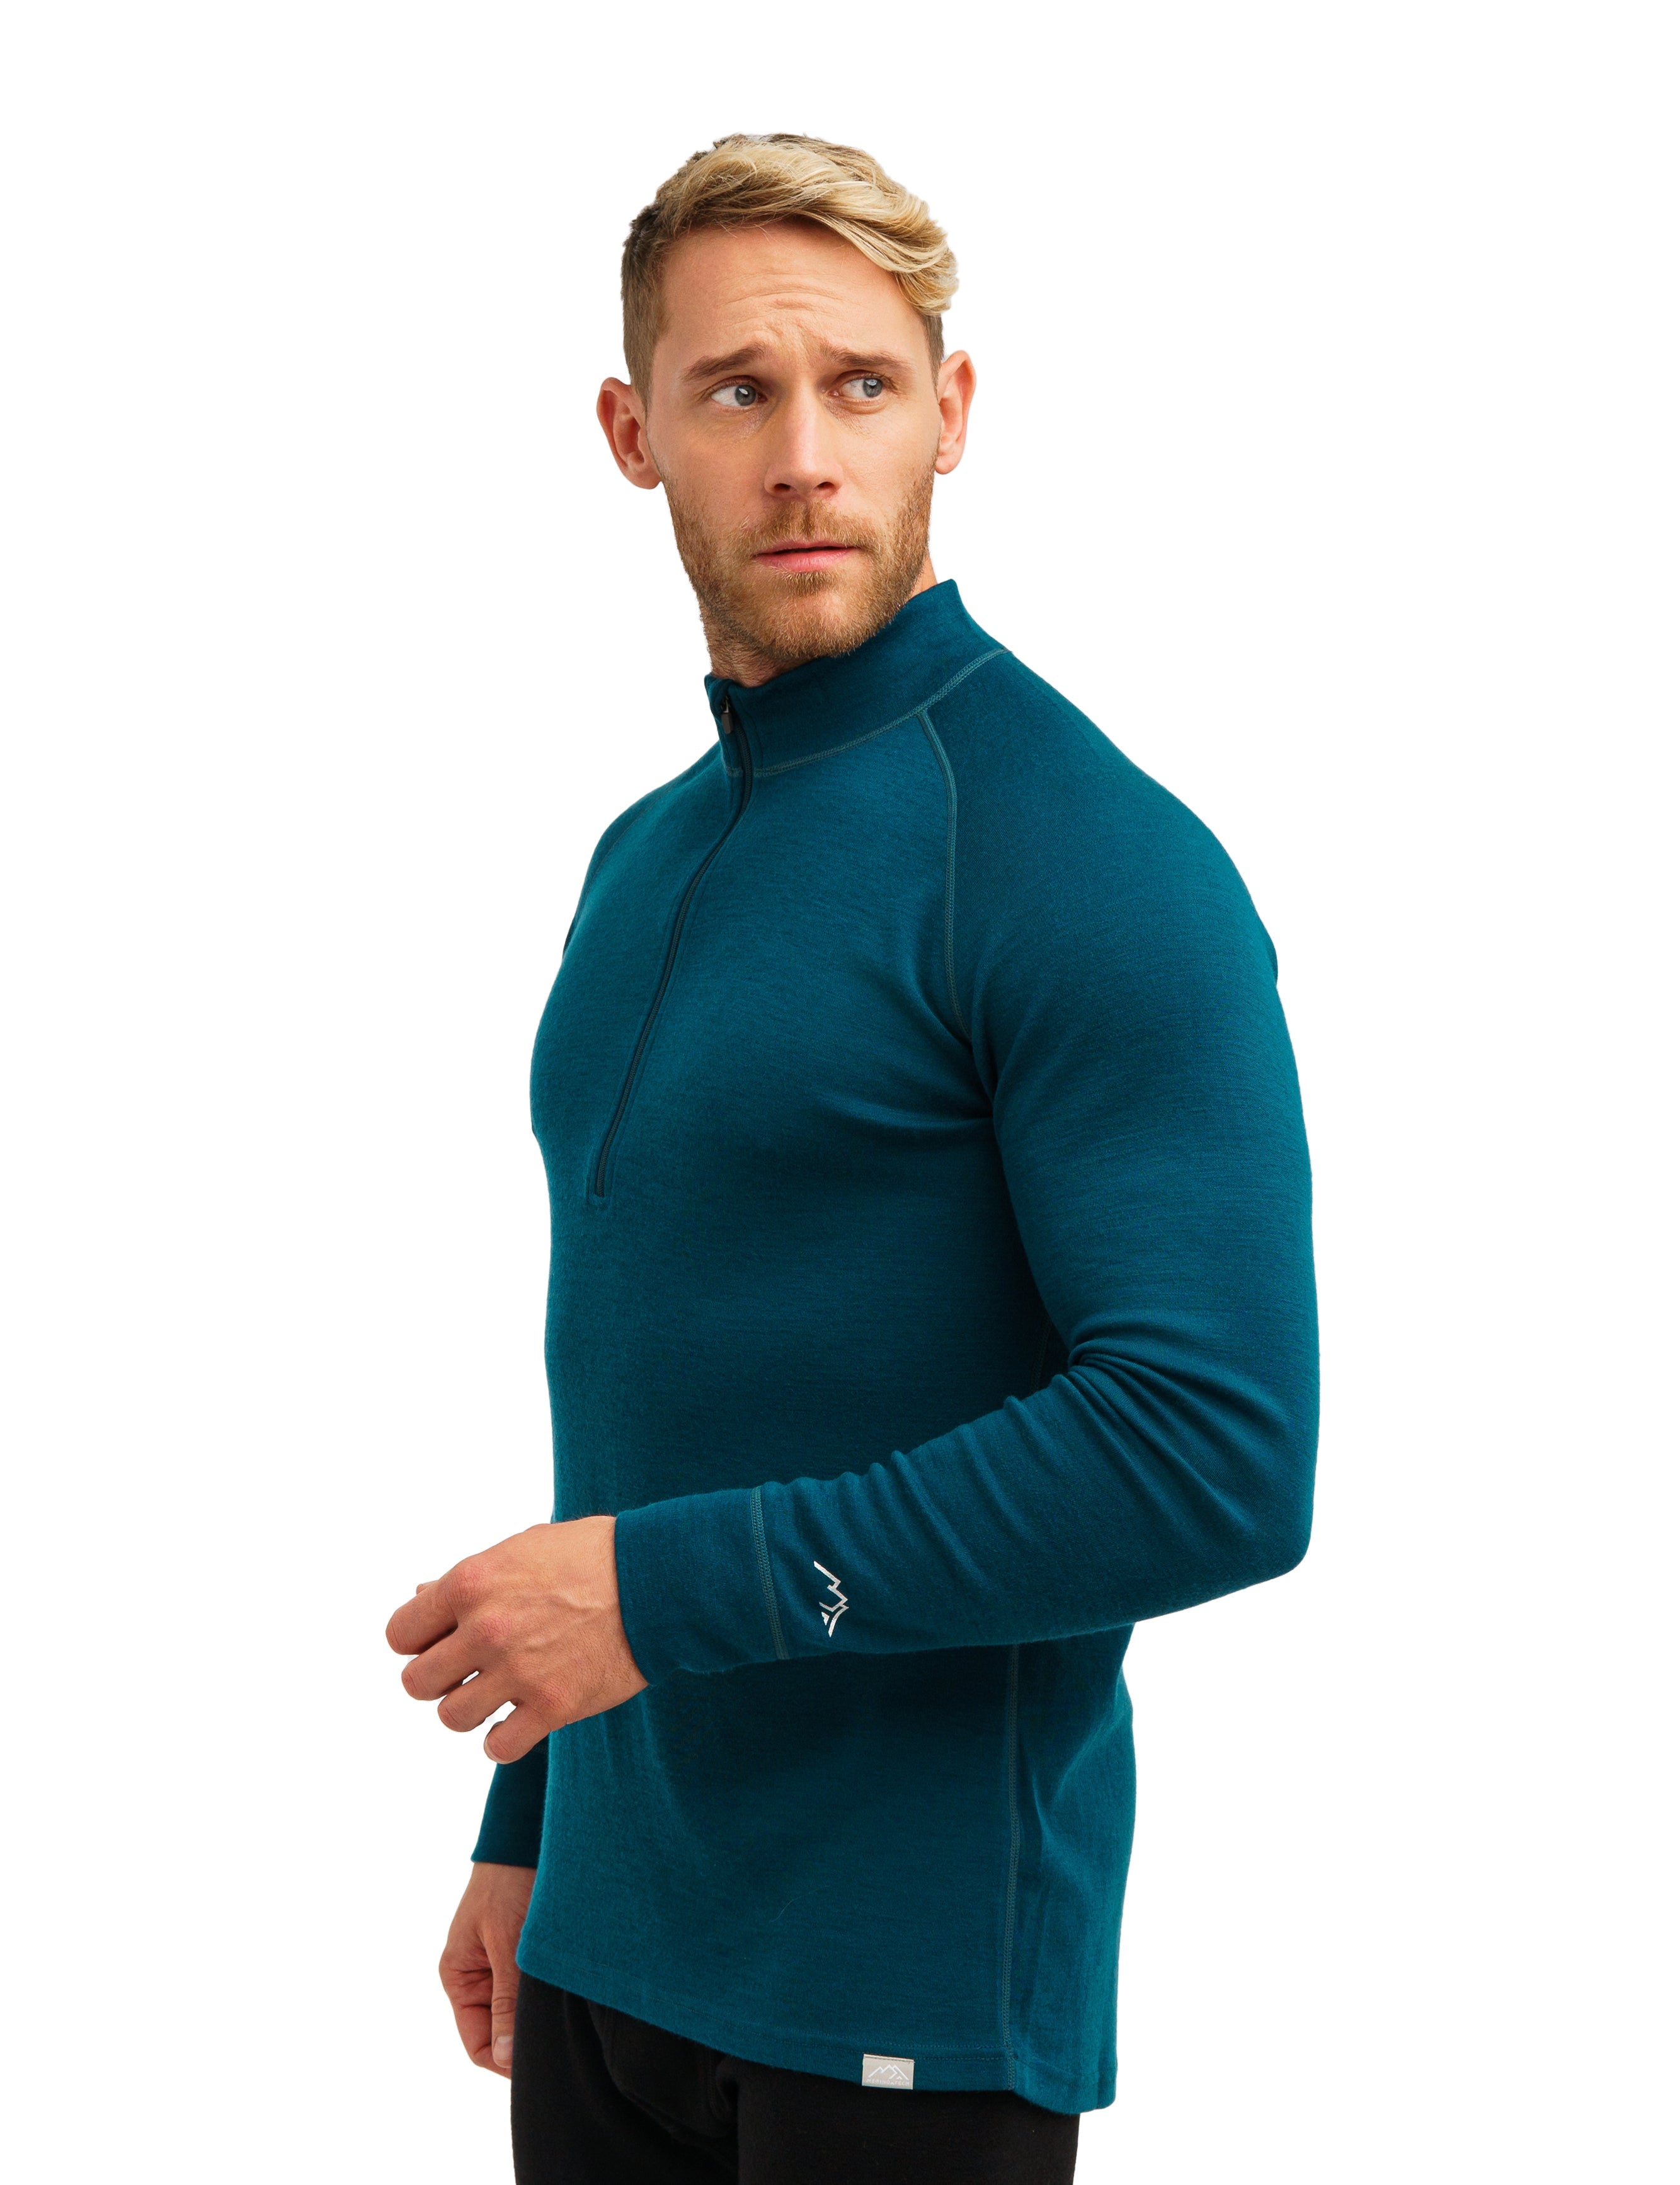 Merino thermal underwear - Men's half-zipper, high-neck top – dark